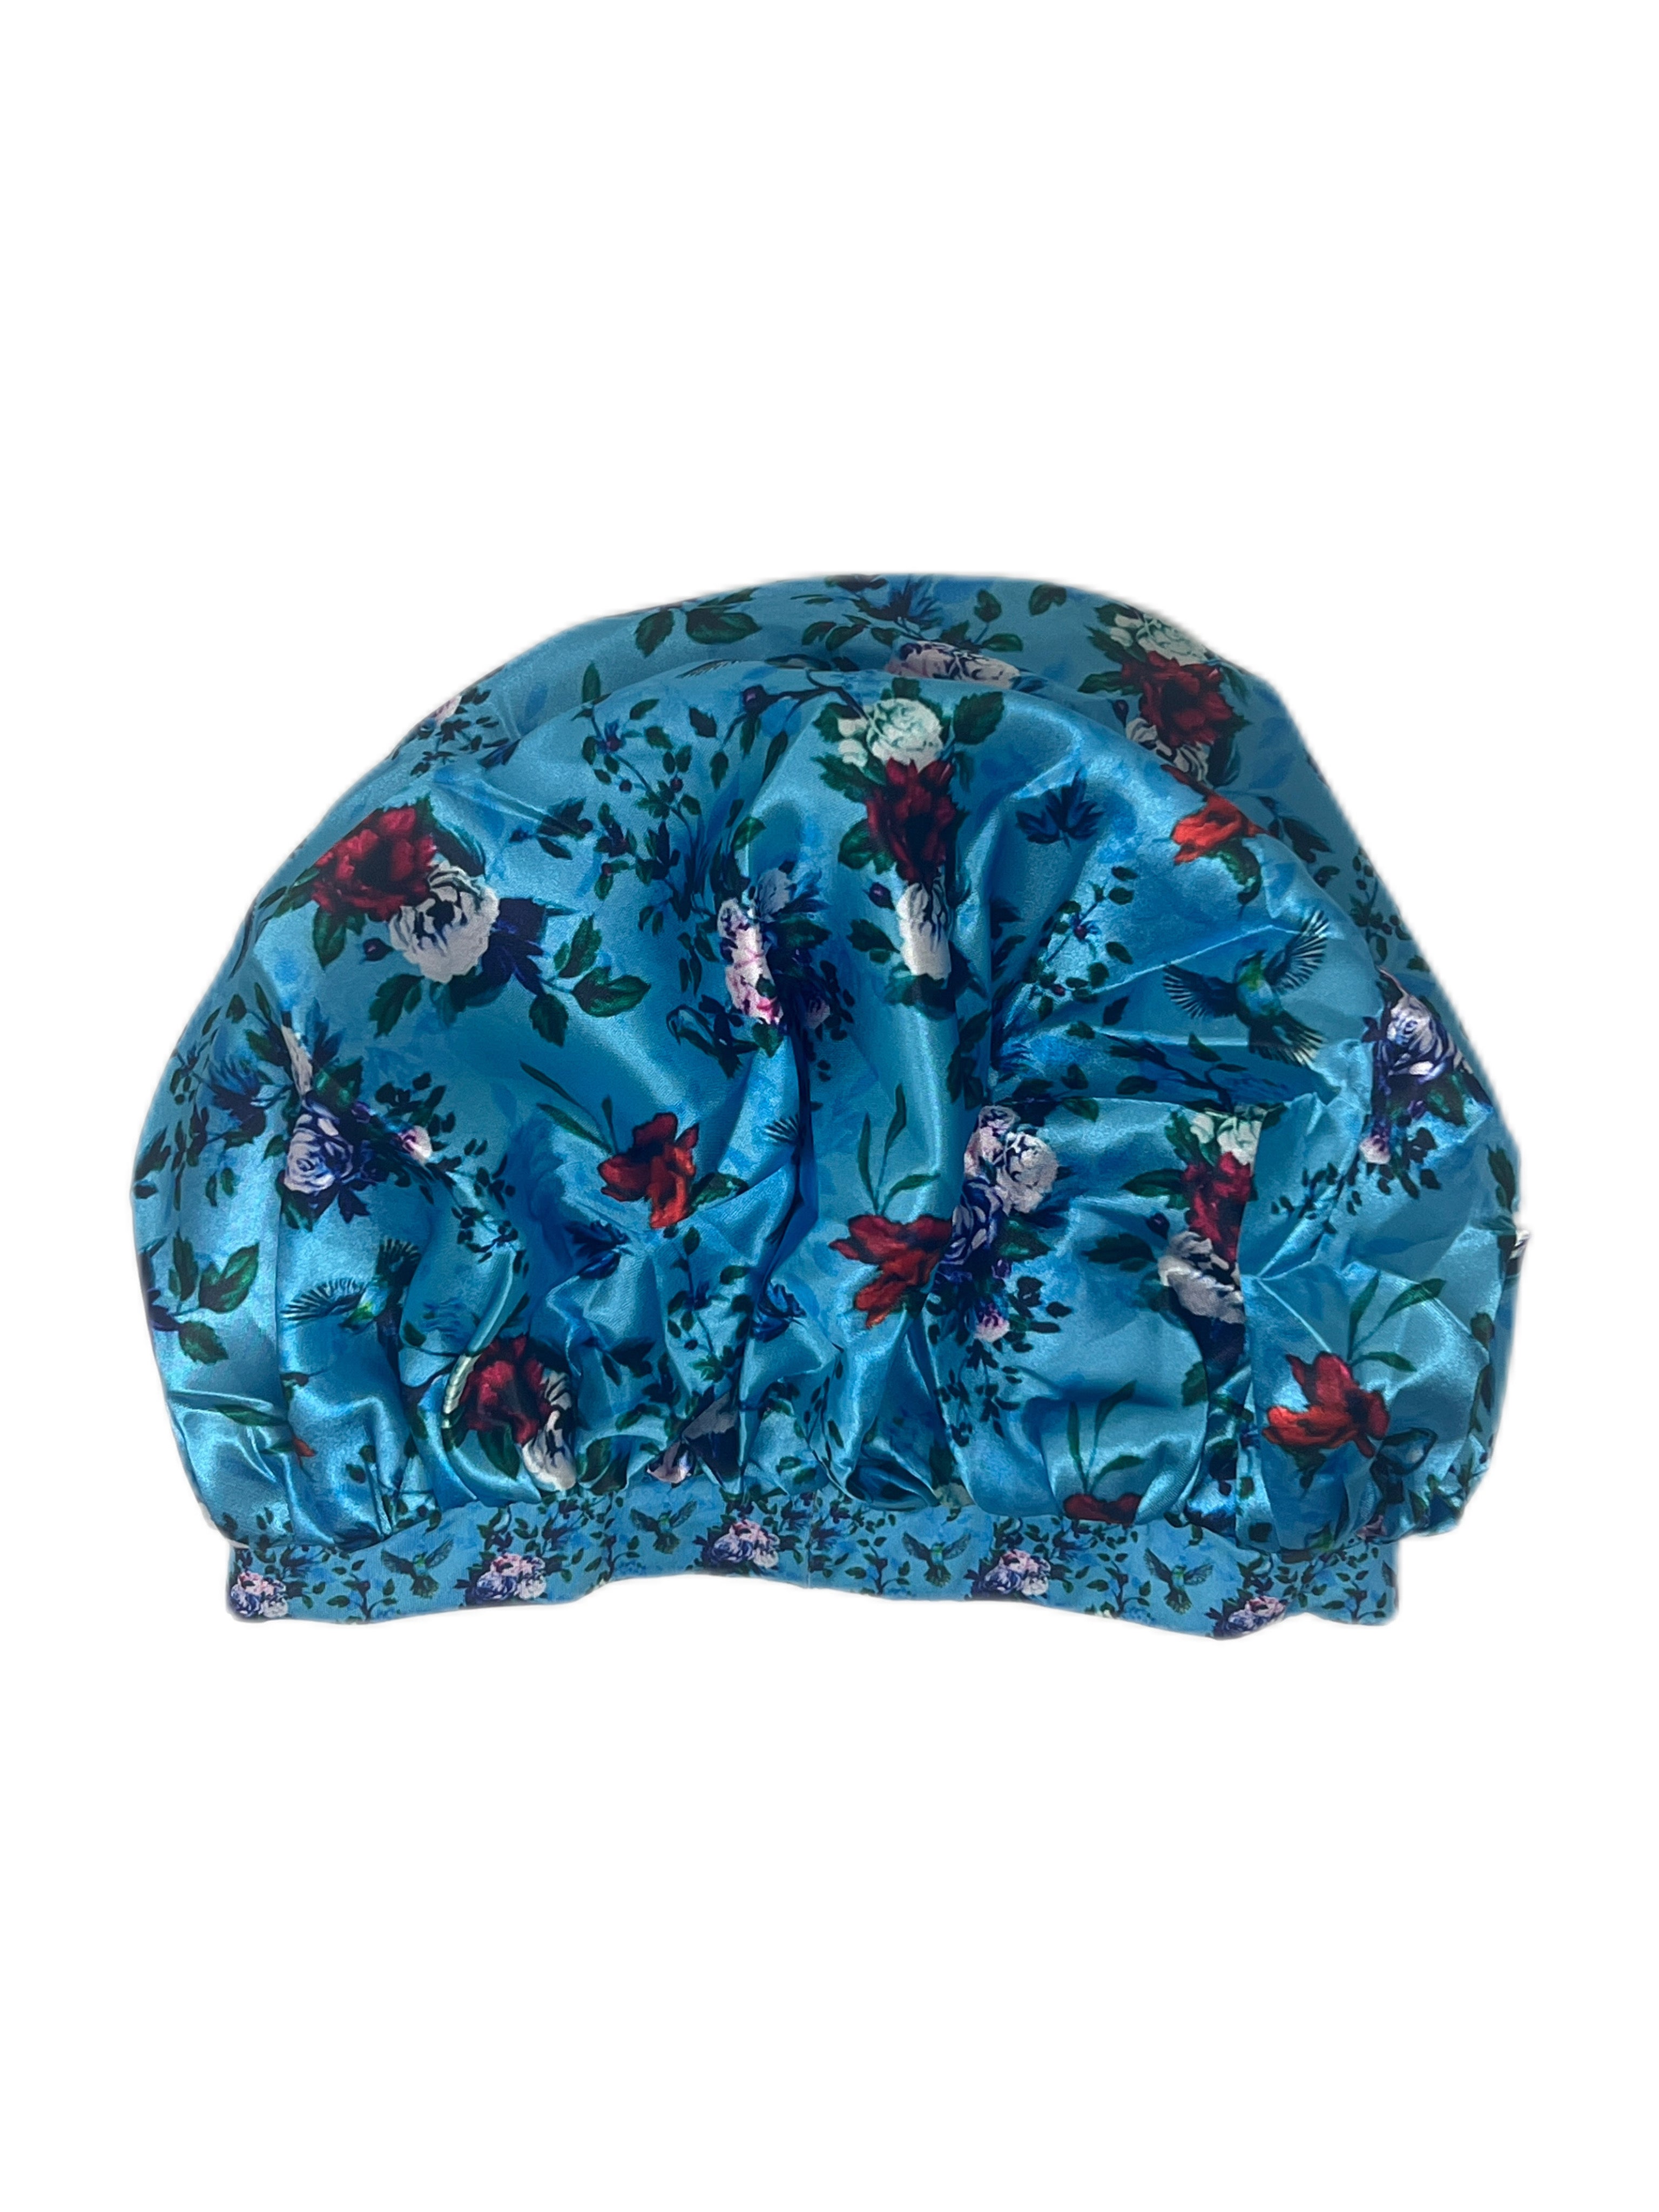 Light Blue Floral Satin Bonnet - Double R Rags